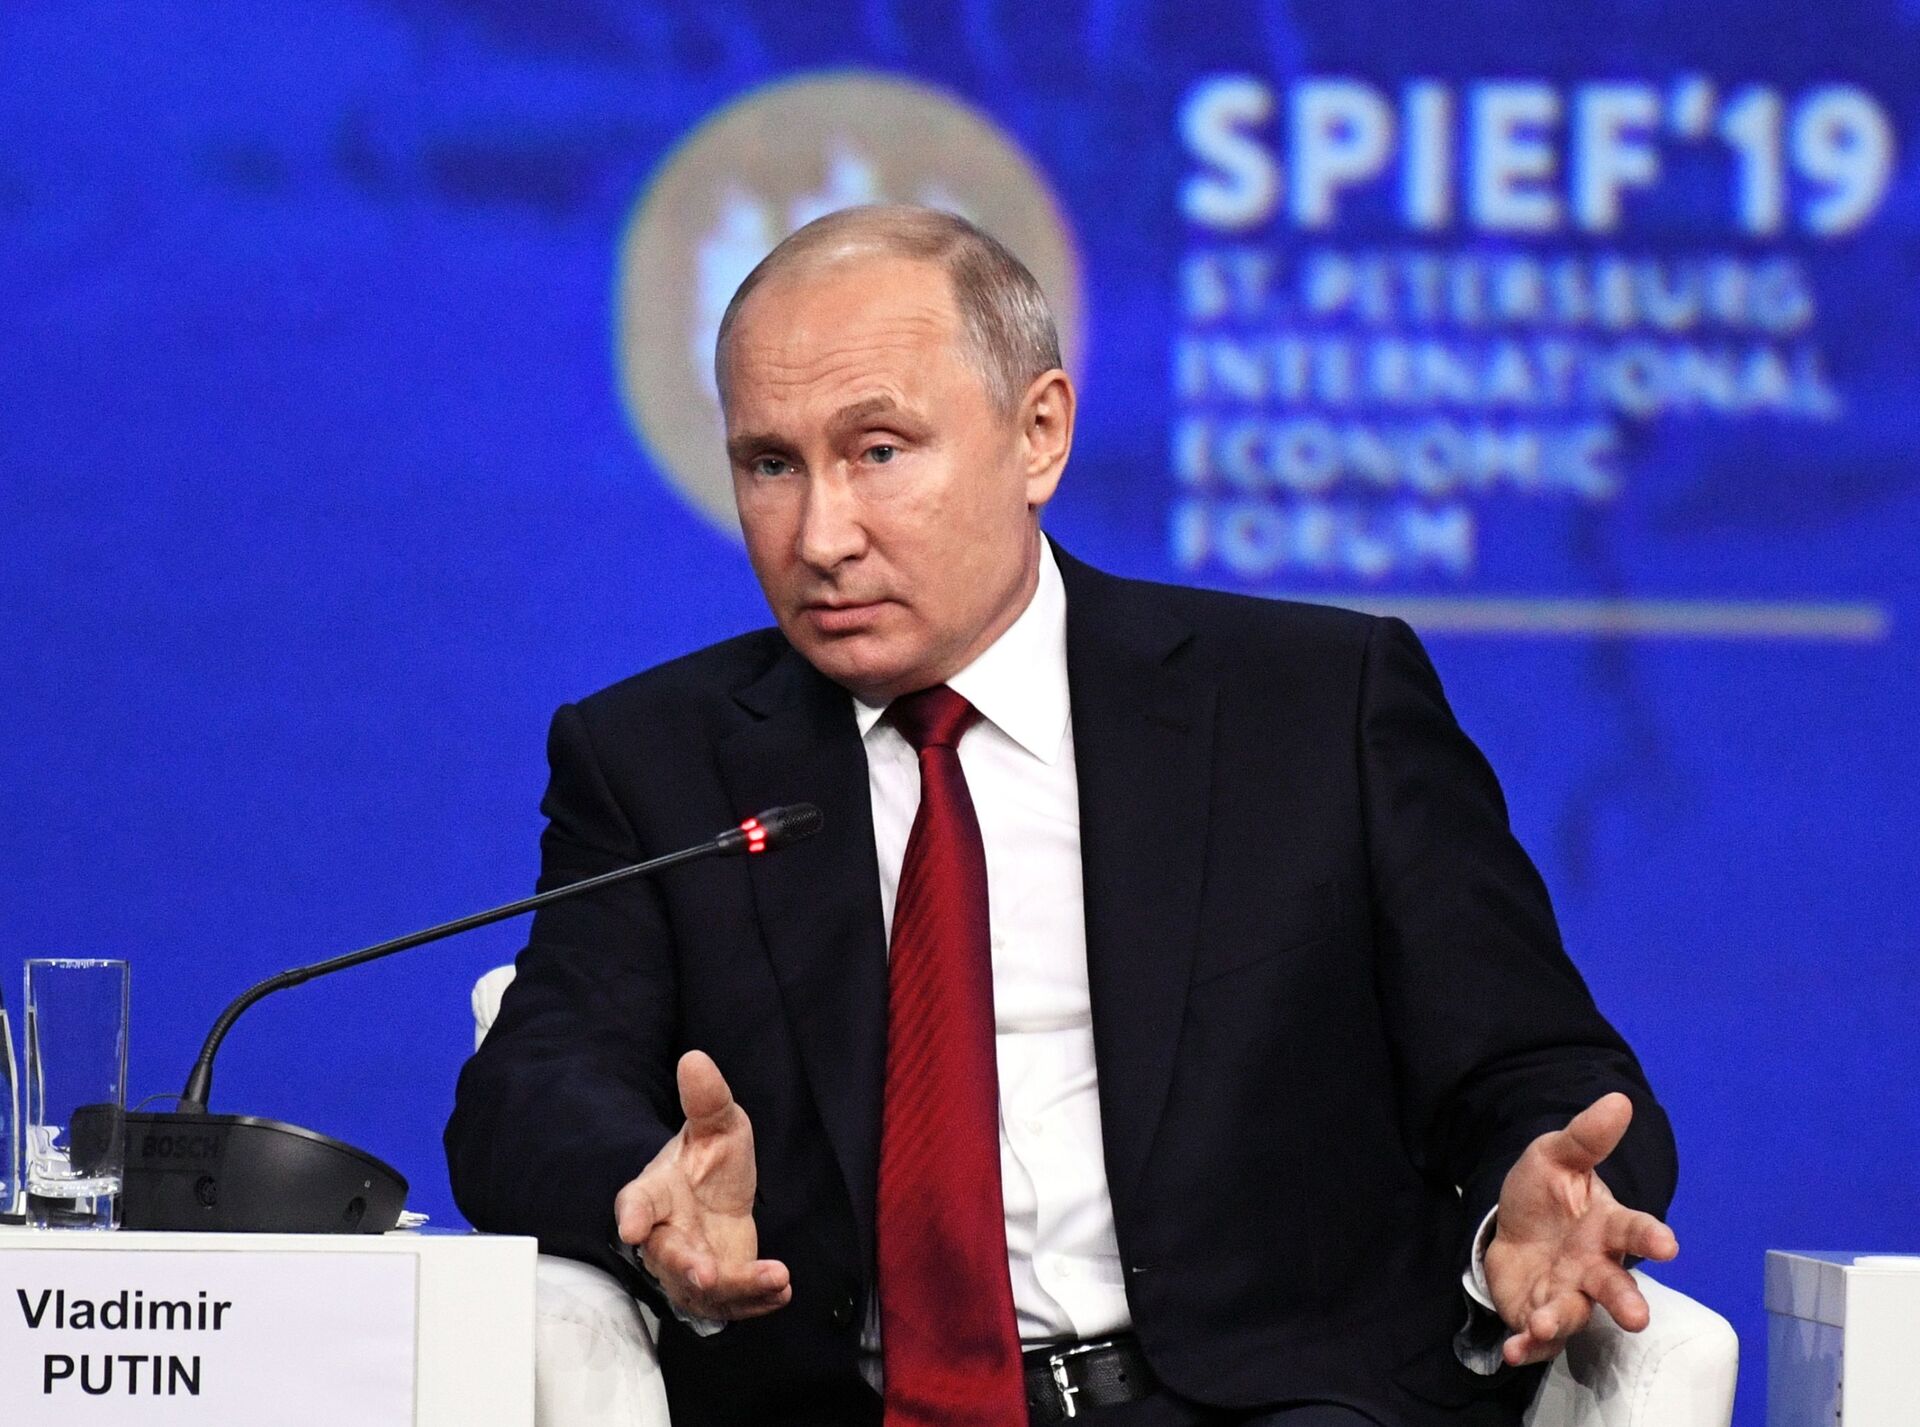 Putin at St. Petersburg International Economic Forum (SPIEF) - Sputnik International, 1920, 15.06.2022